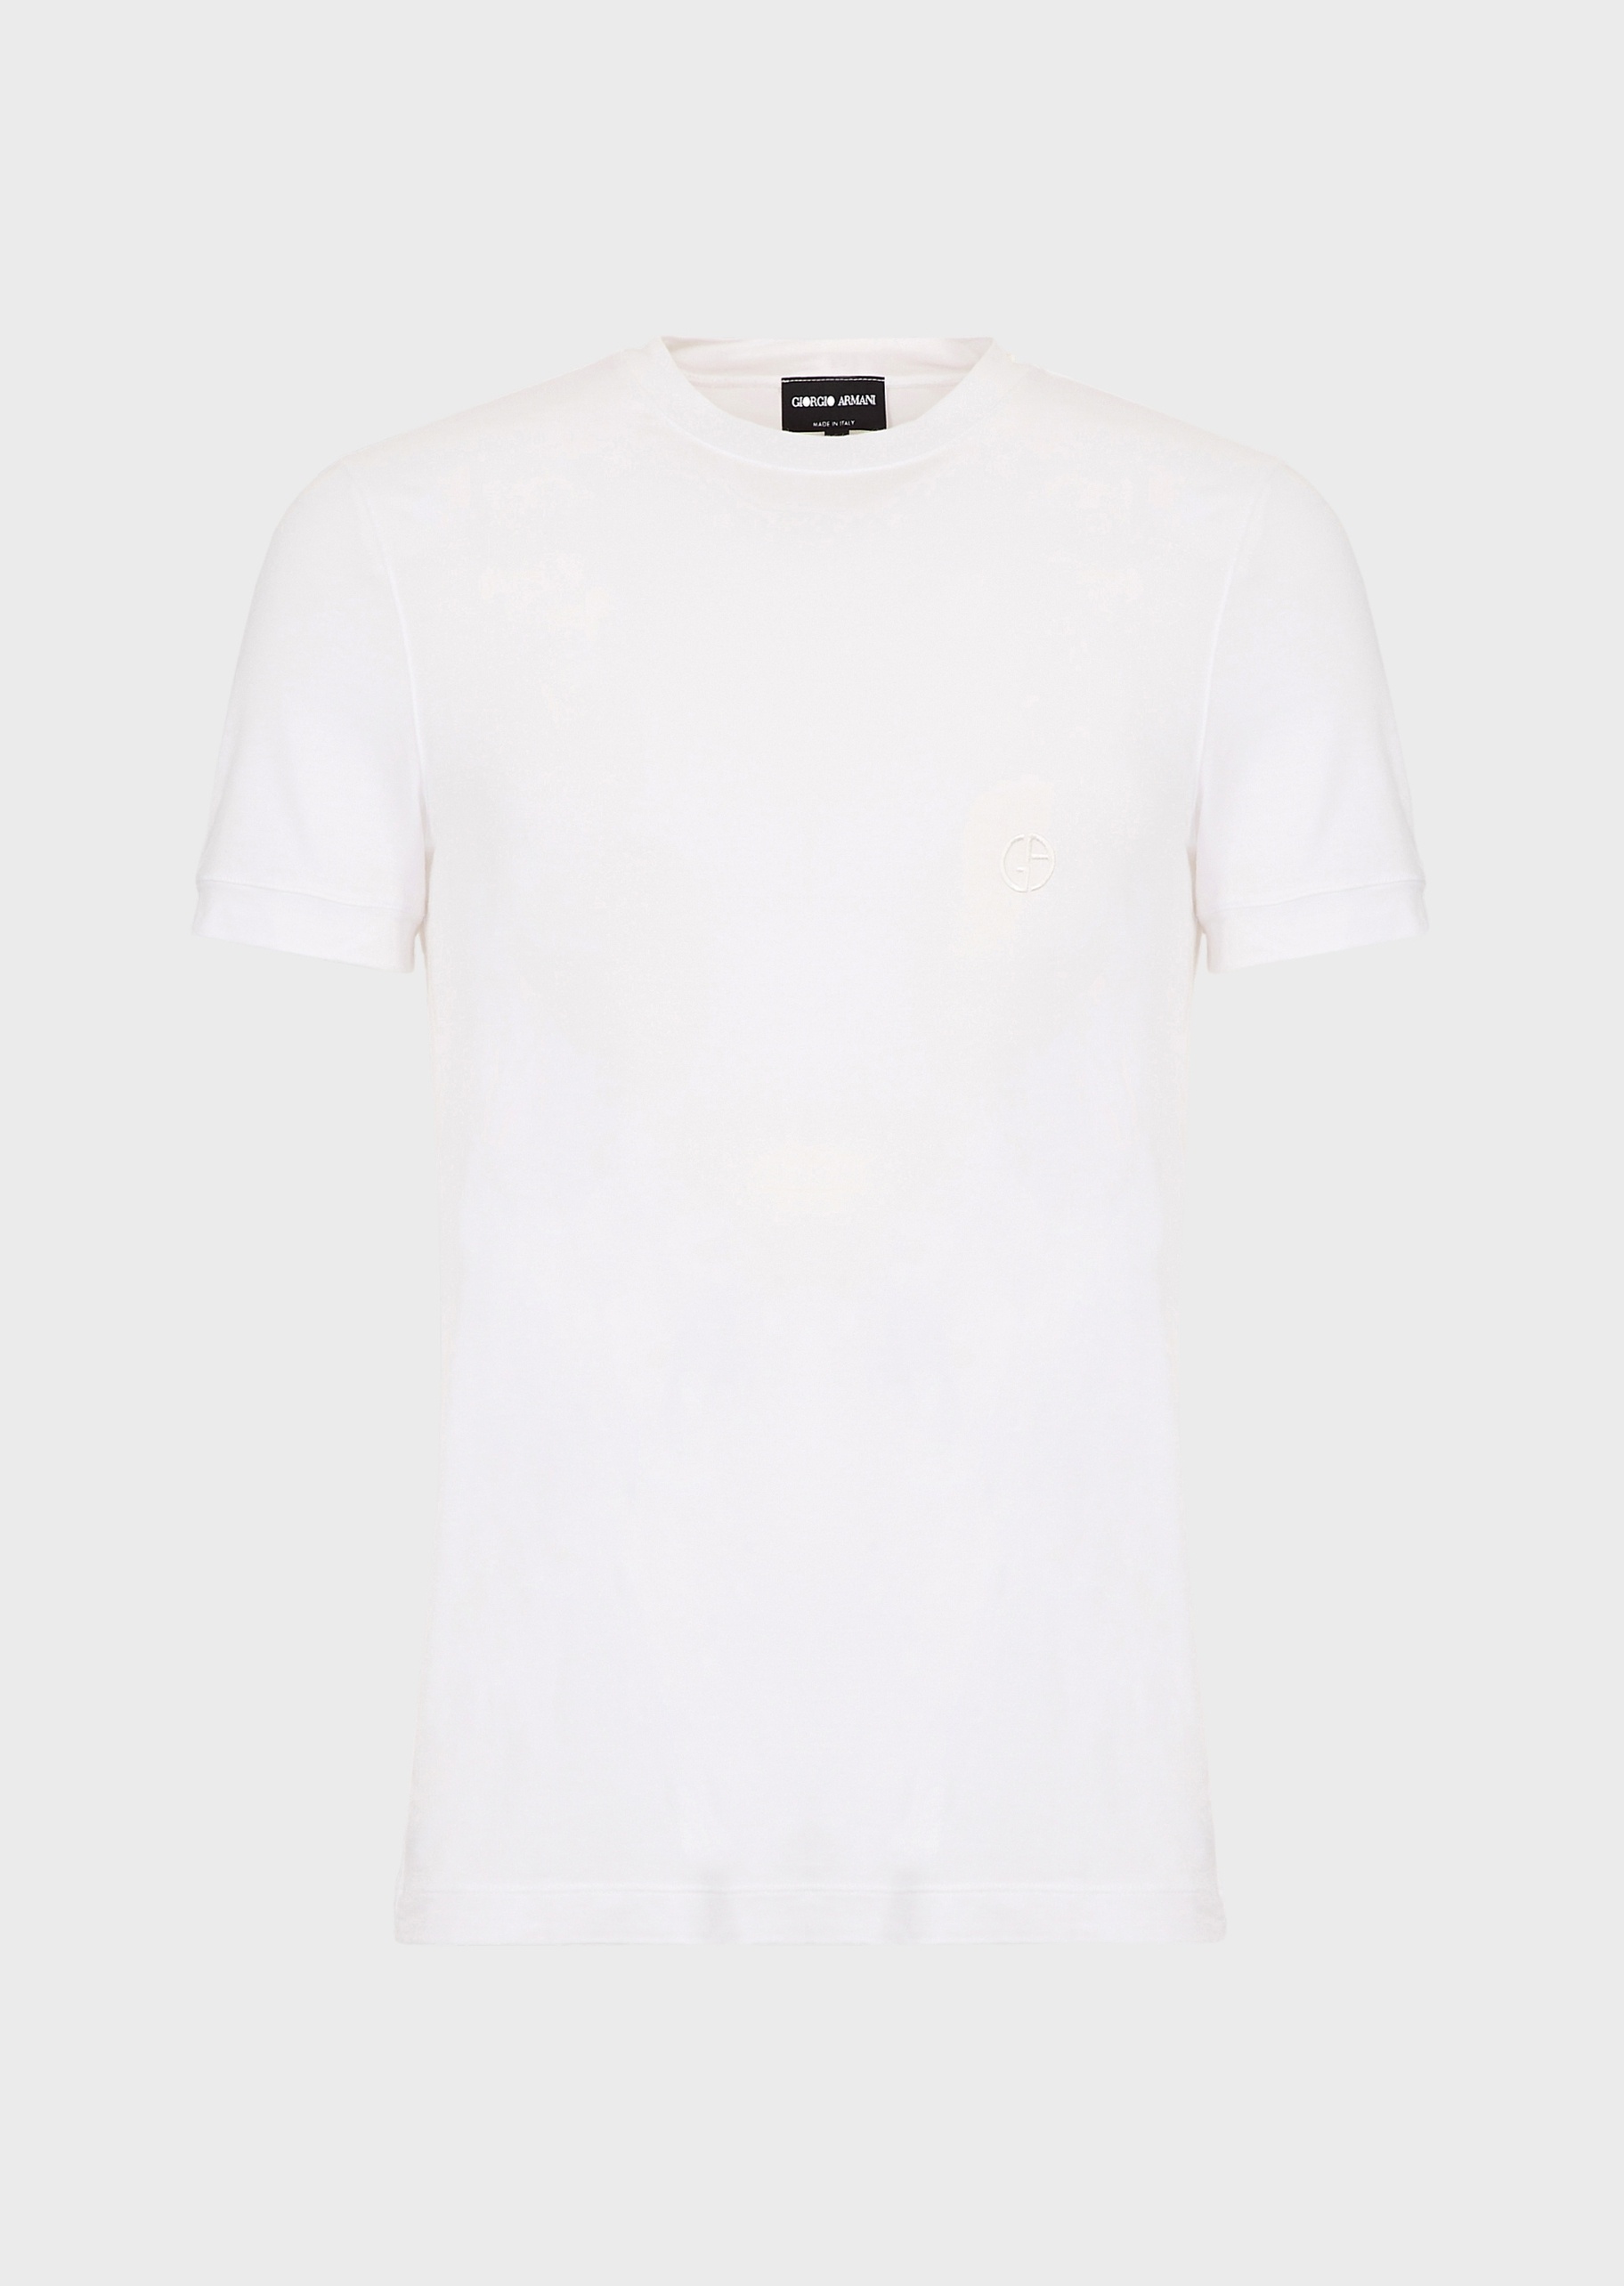 Giorgio Armani 男士弹力合身短袖圆领休闲纯色T恤